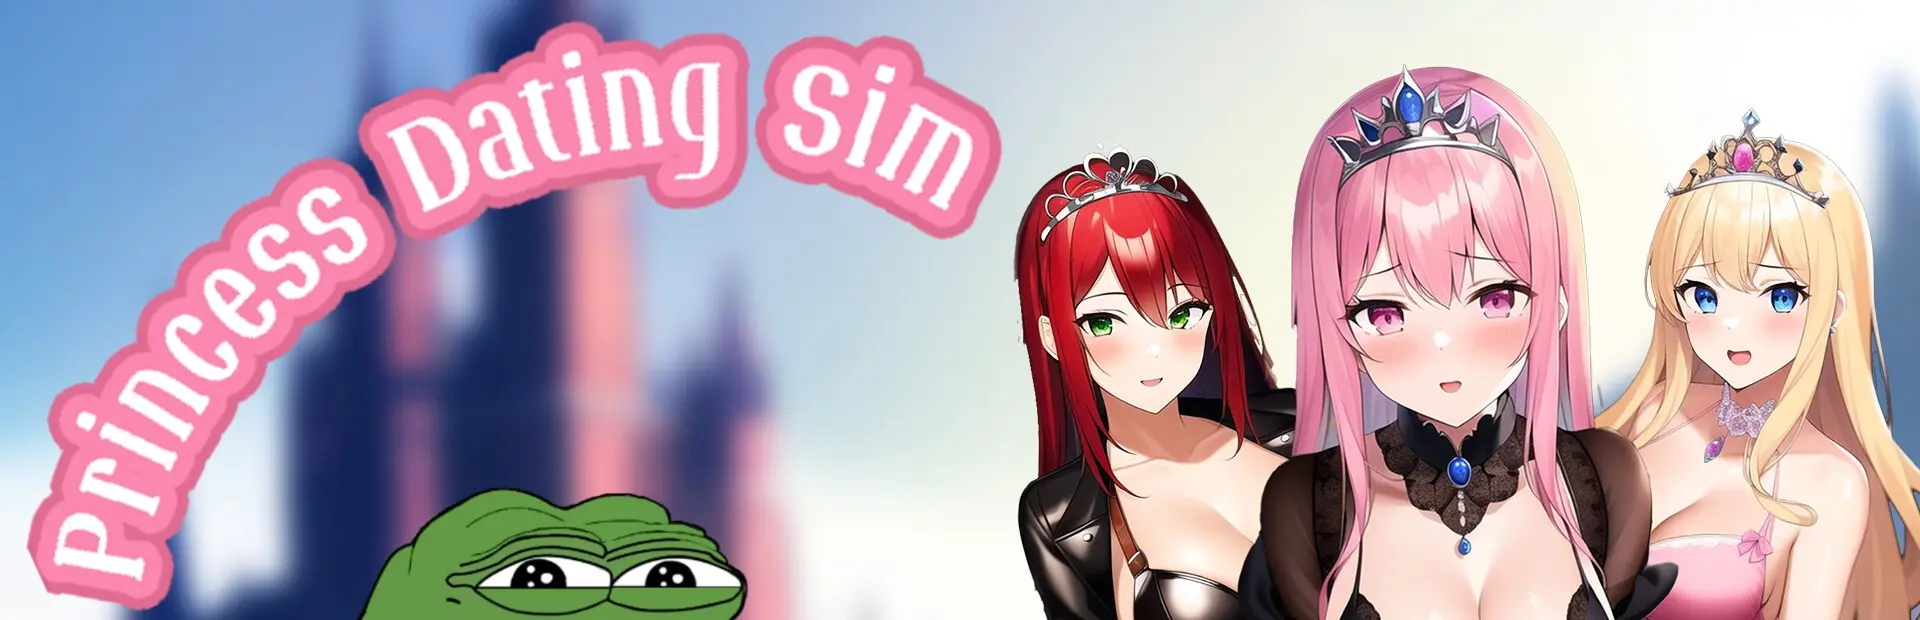 Princess Dating Sim main image